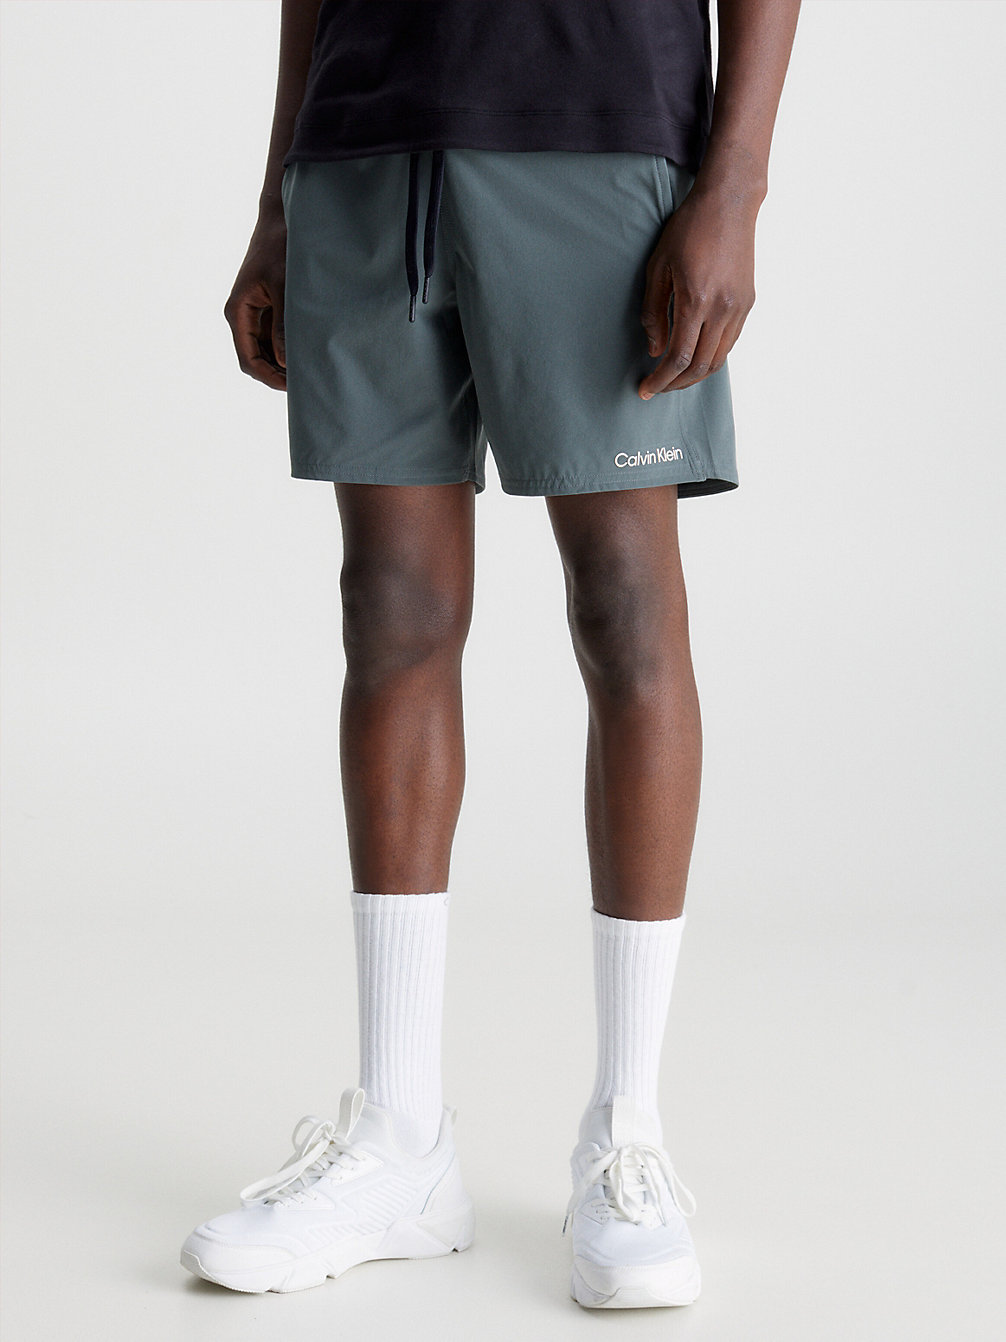 URBAN CHIC Quick-Dry Gym Shorts undefined Herren Calvin Klein